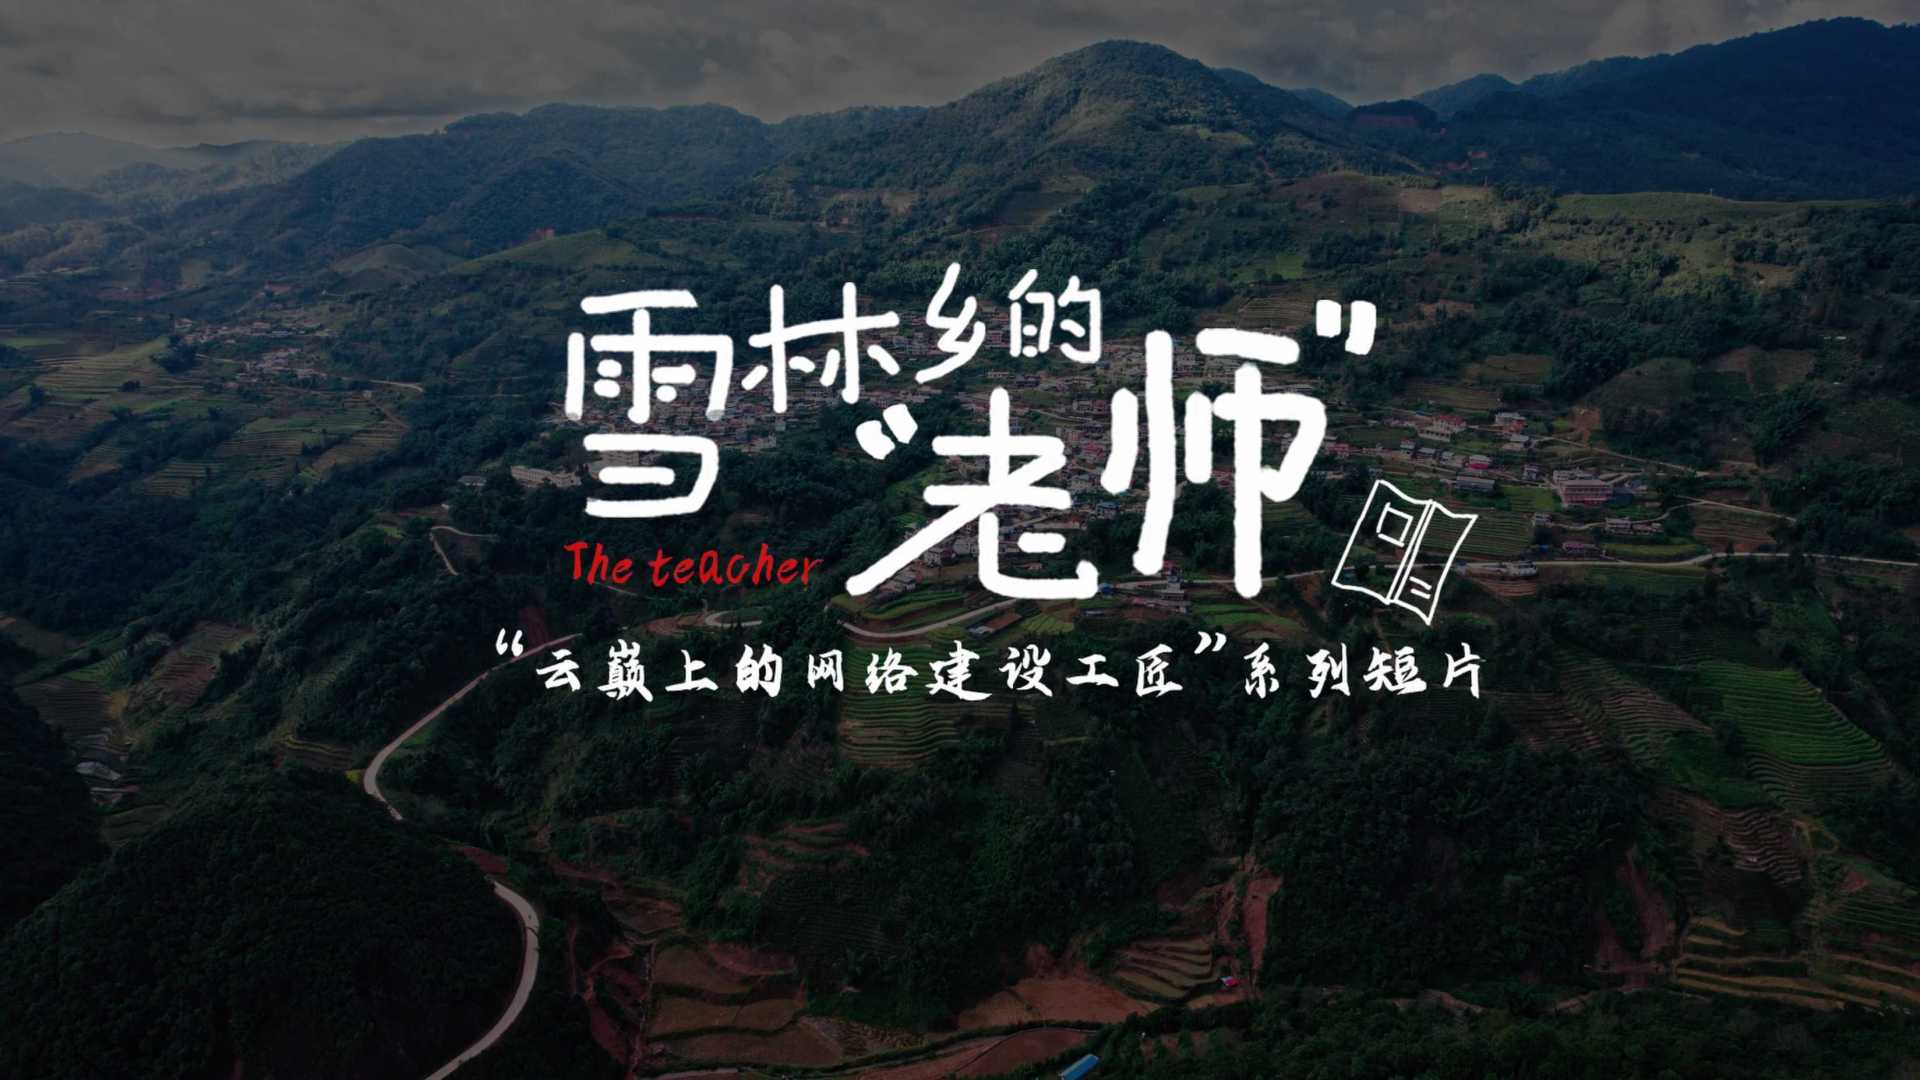 【人物宣传片】云南移动《雪林乡的“老师”》「云巅上的网络建设工匠」系列短片